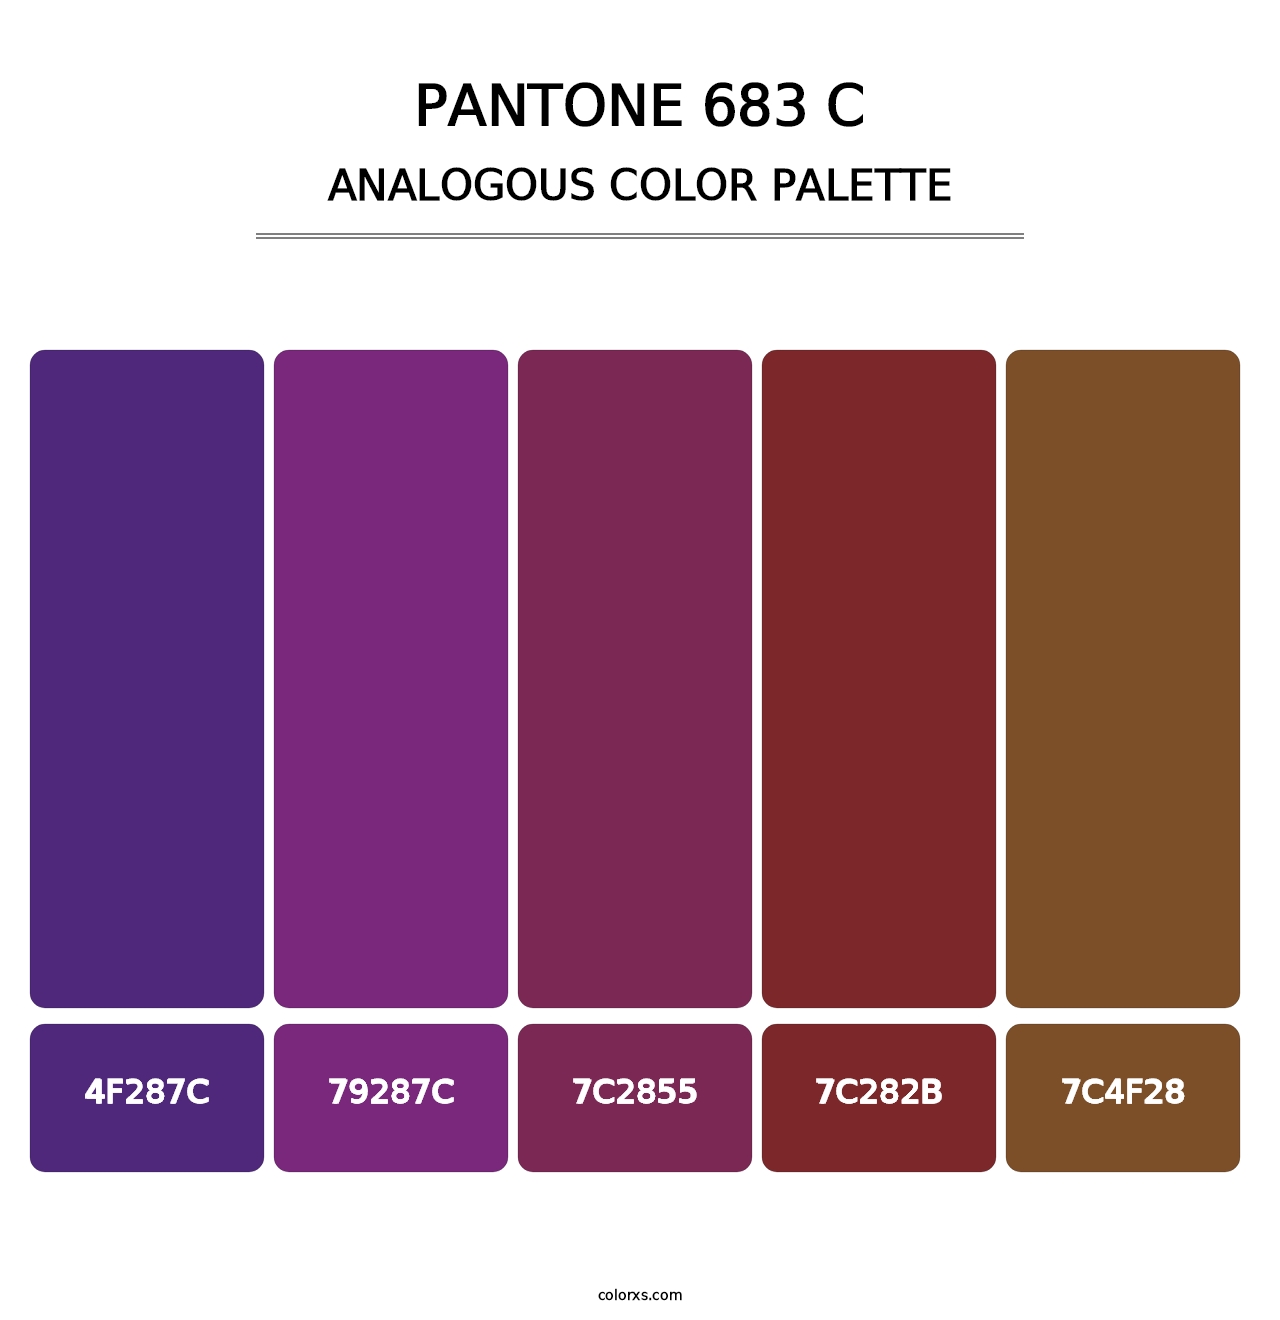 PANTONE 683 C - Analogous Color Palette